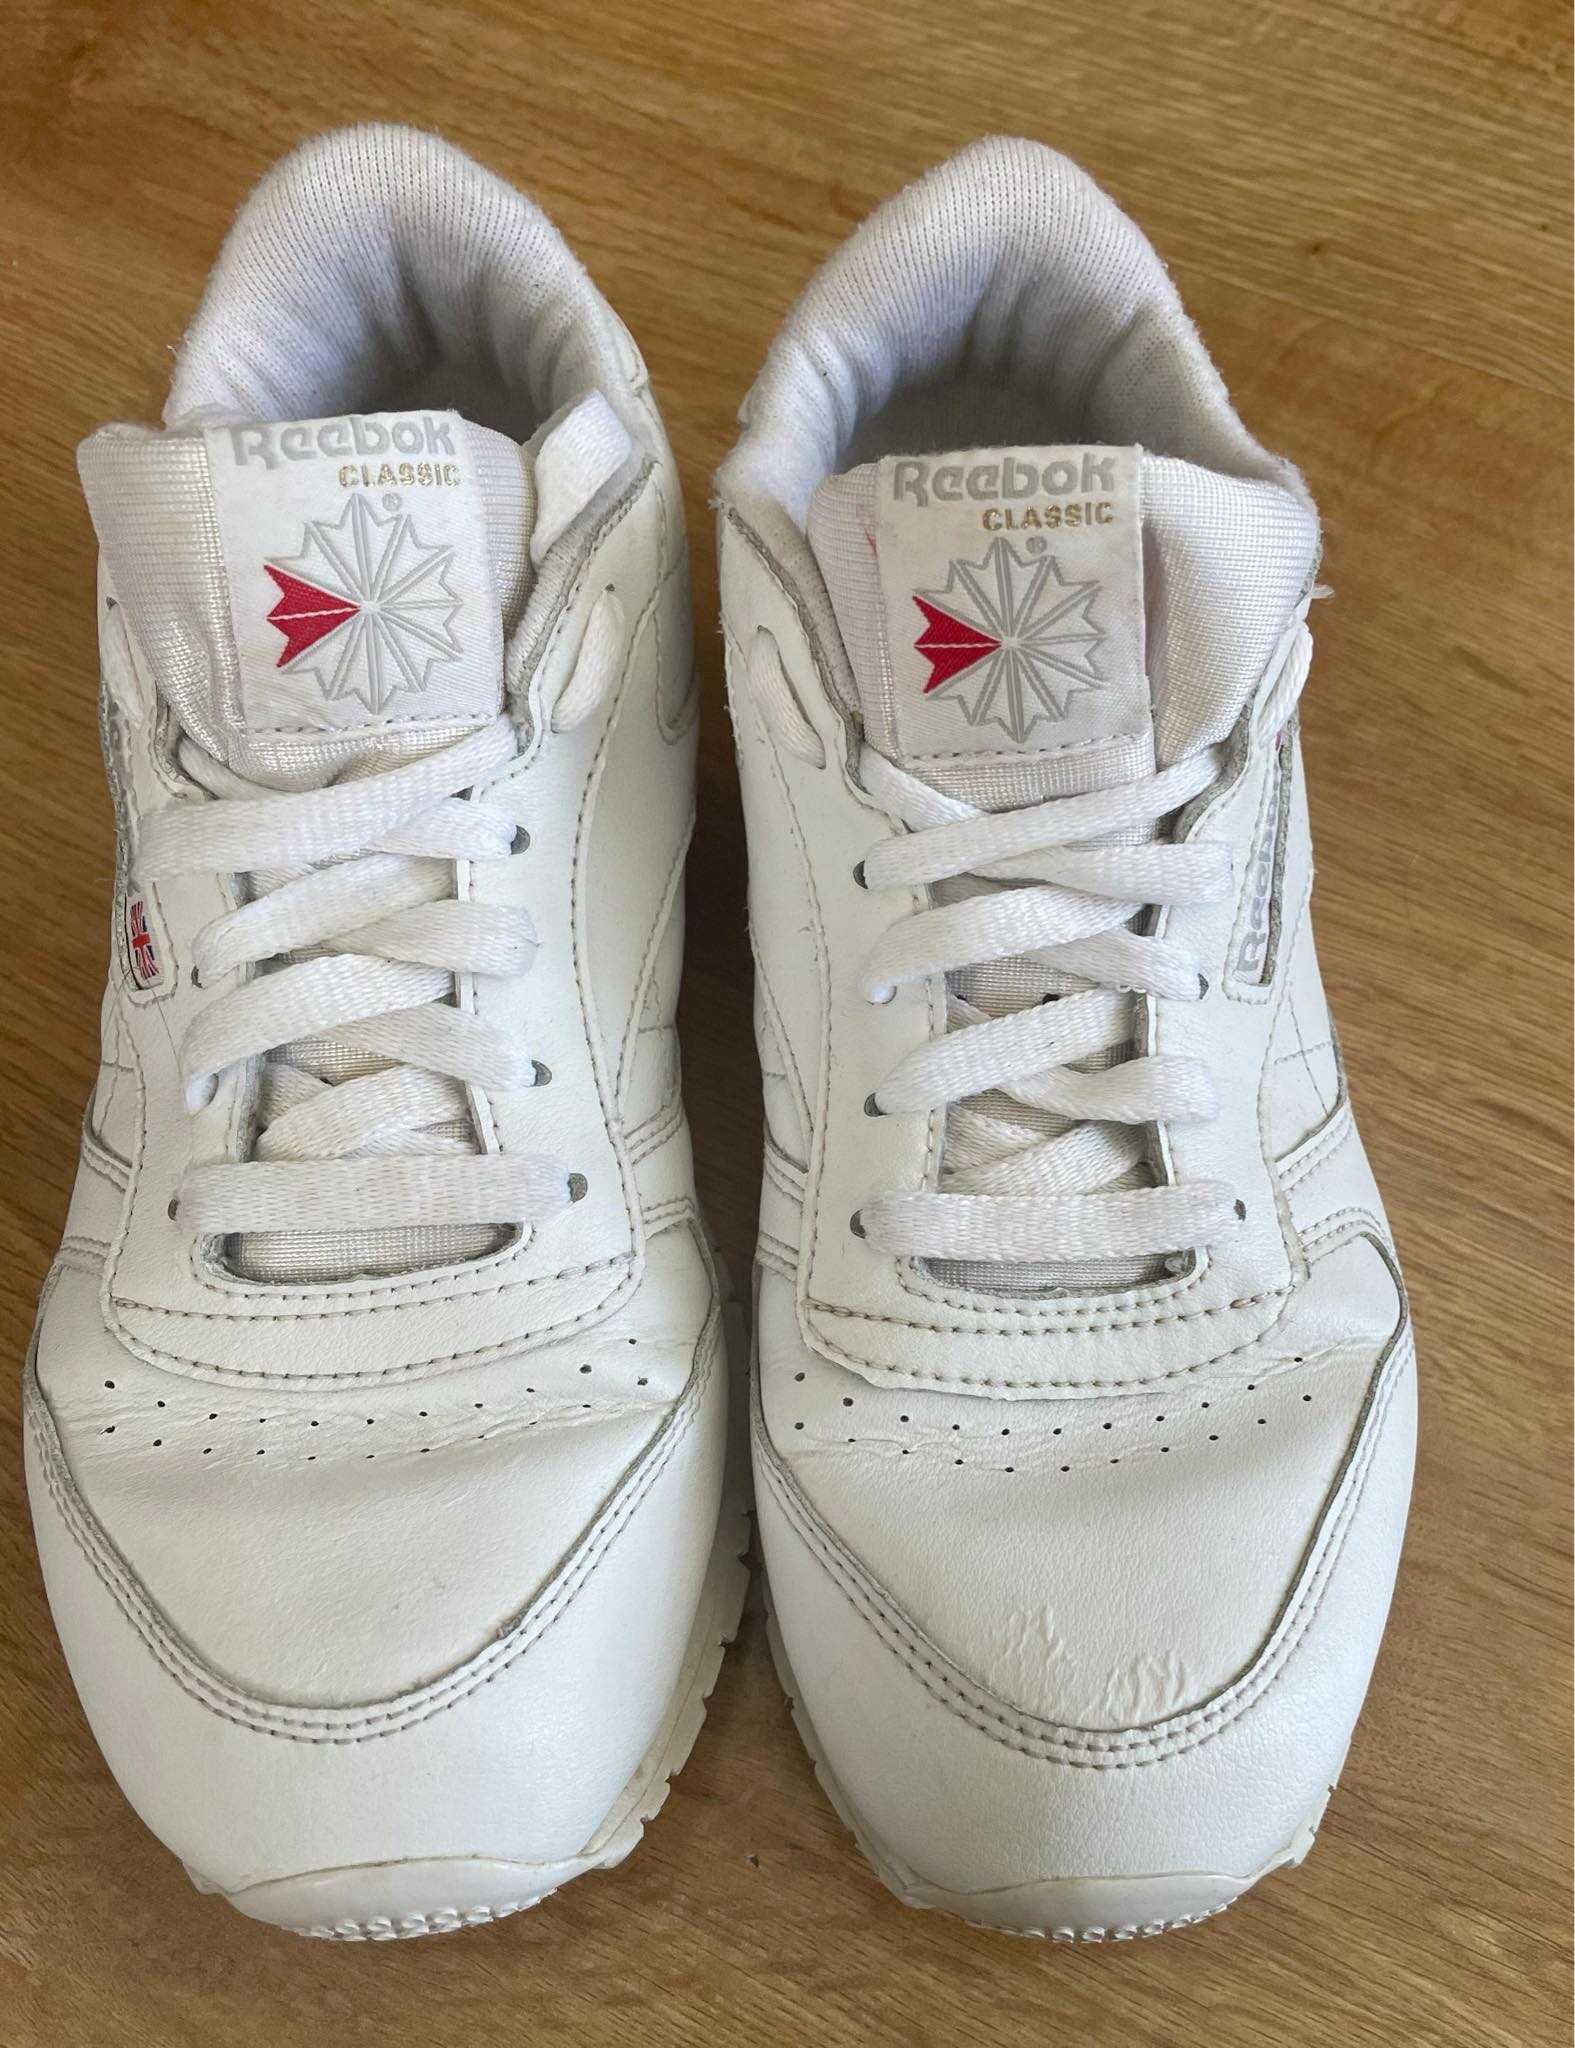 Reebok classic buty sneakersy skórzane białe 35